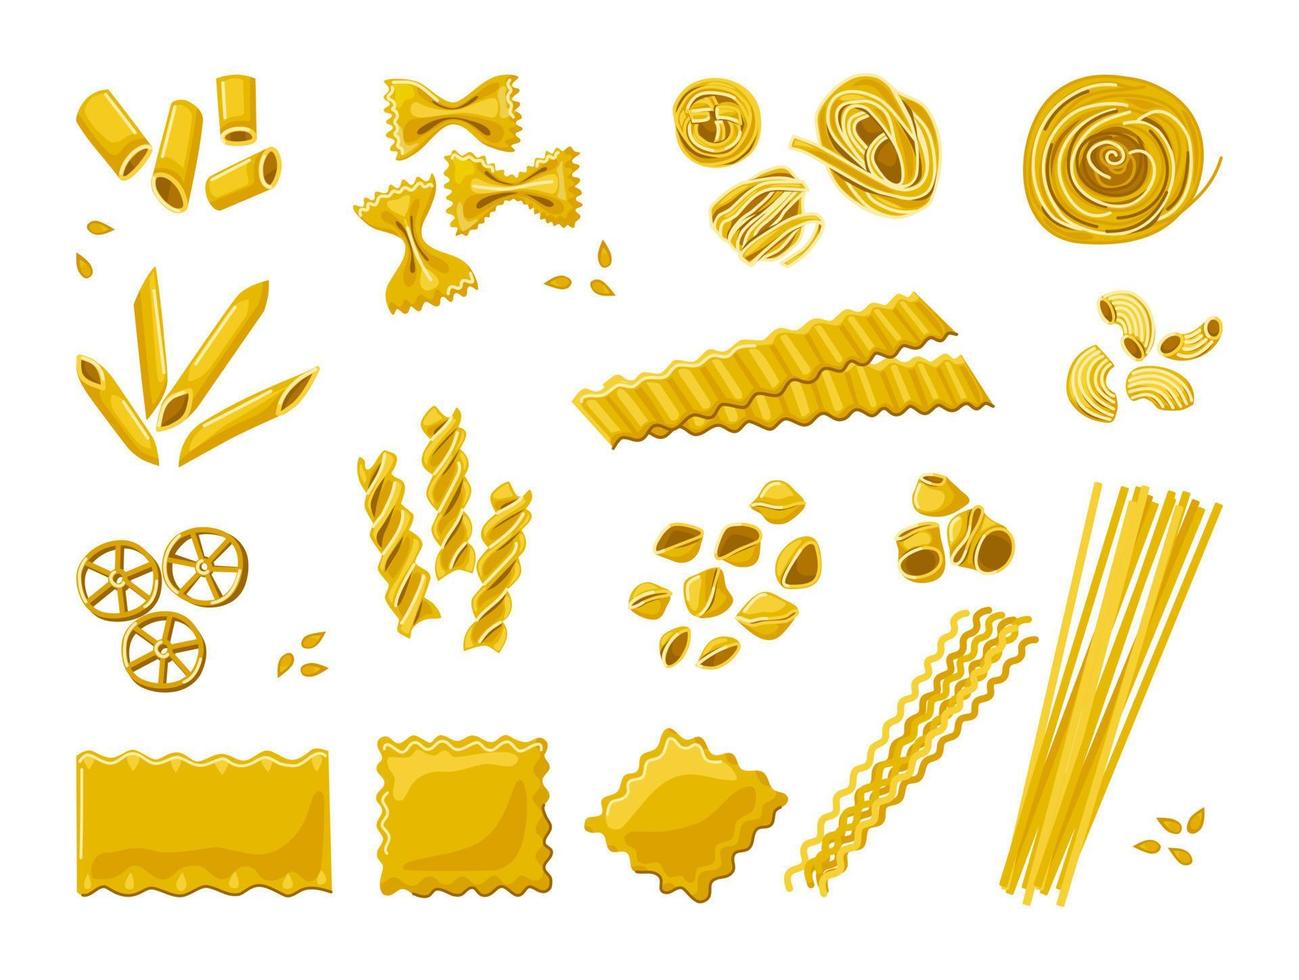 verschiedene Nudelsorten. italienische nudeln und macaroni.decor des restaurantmenüs der italienischen küche. Vektor-Cartoon-Set vektor